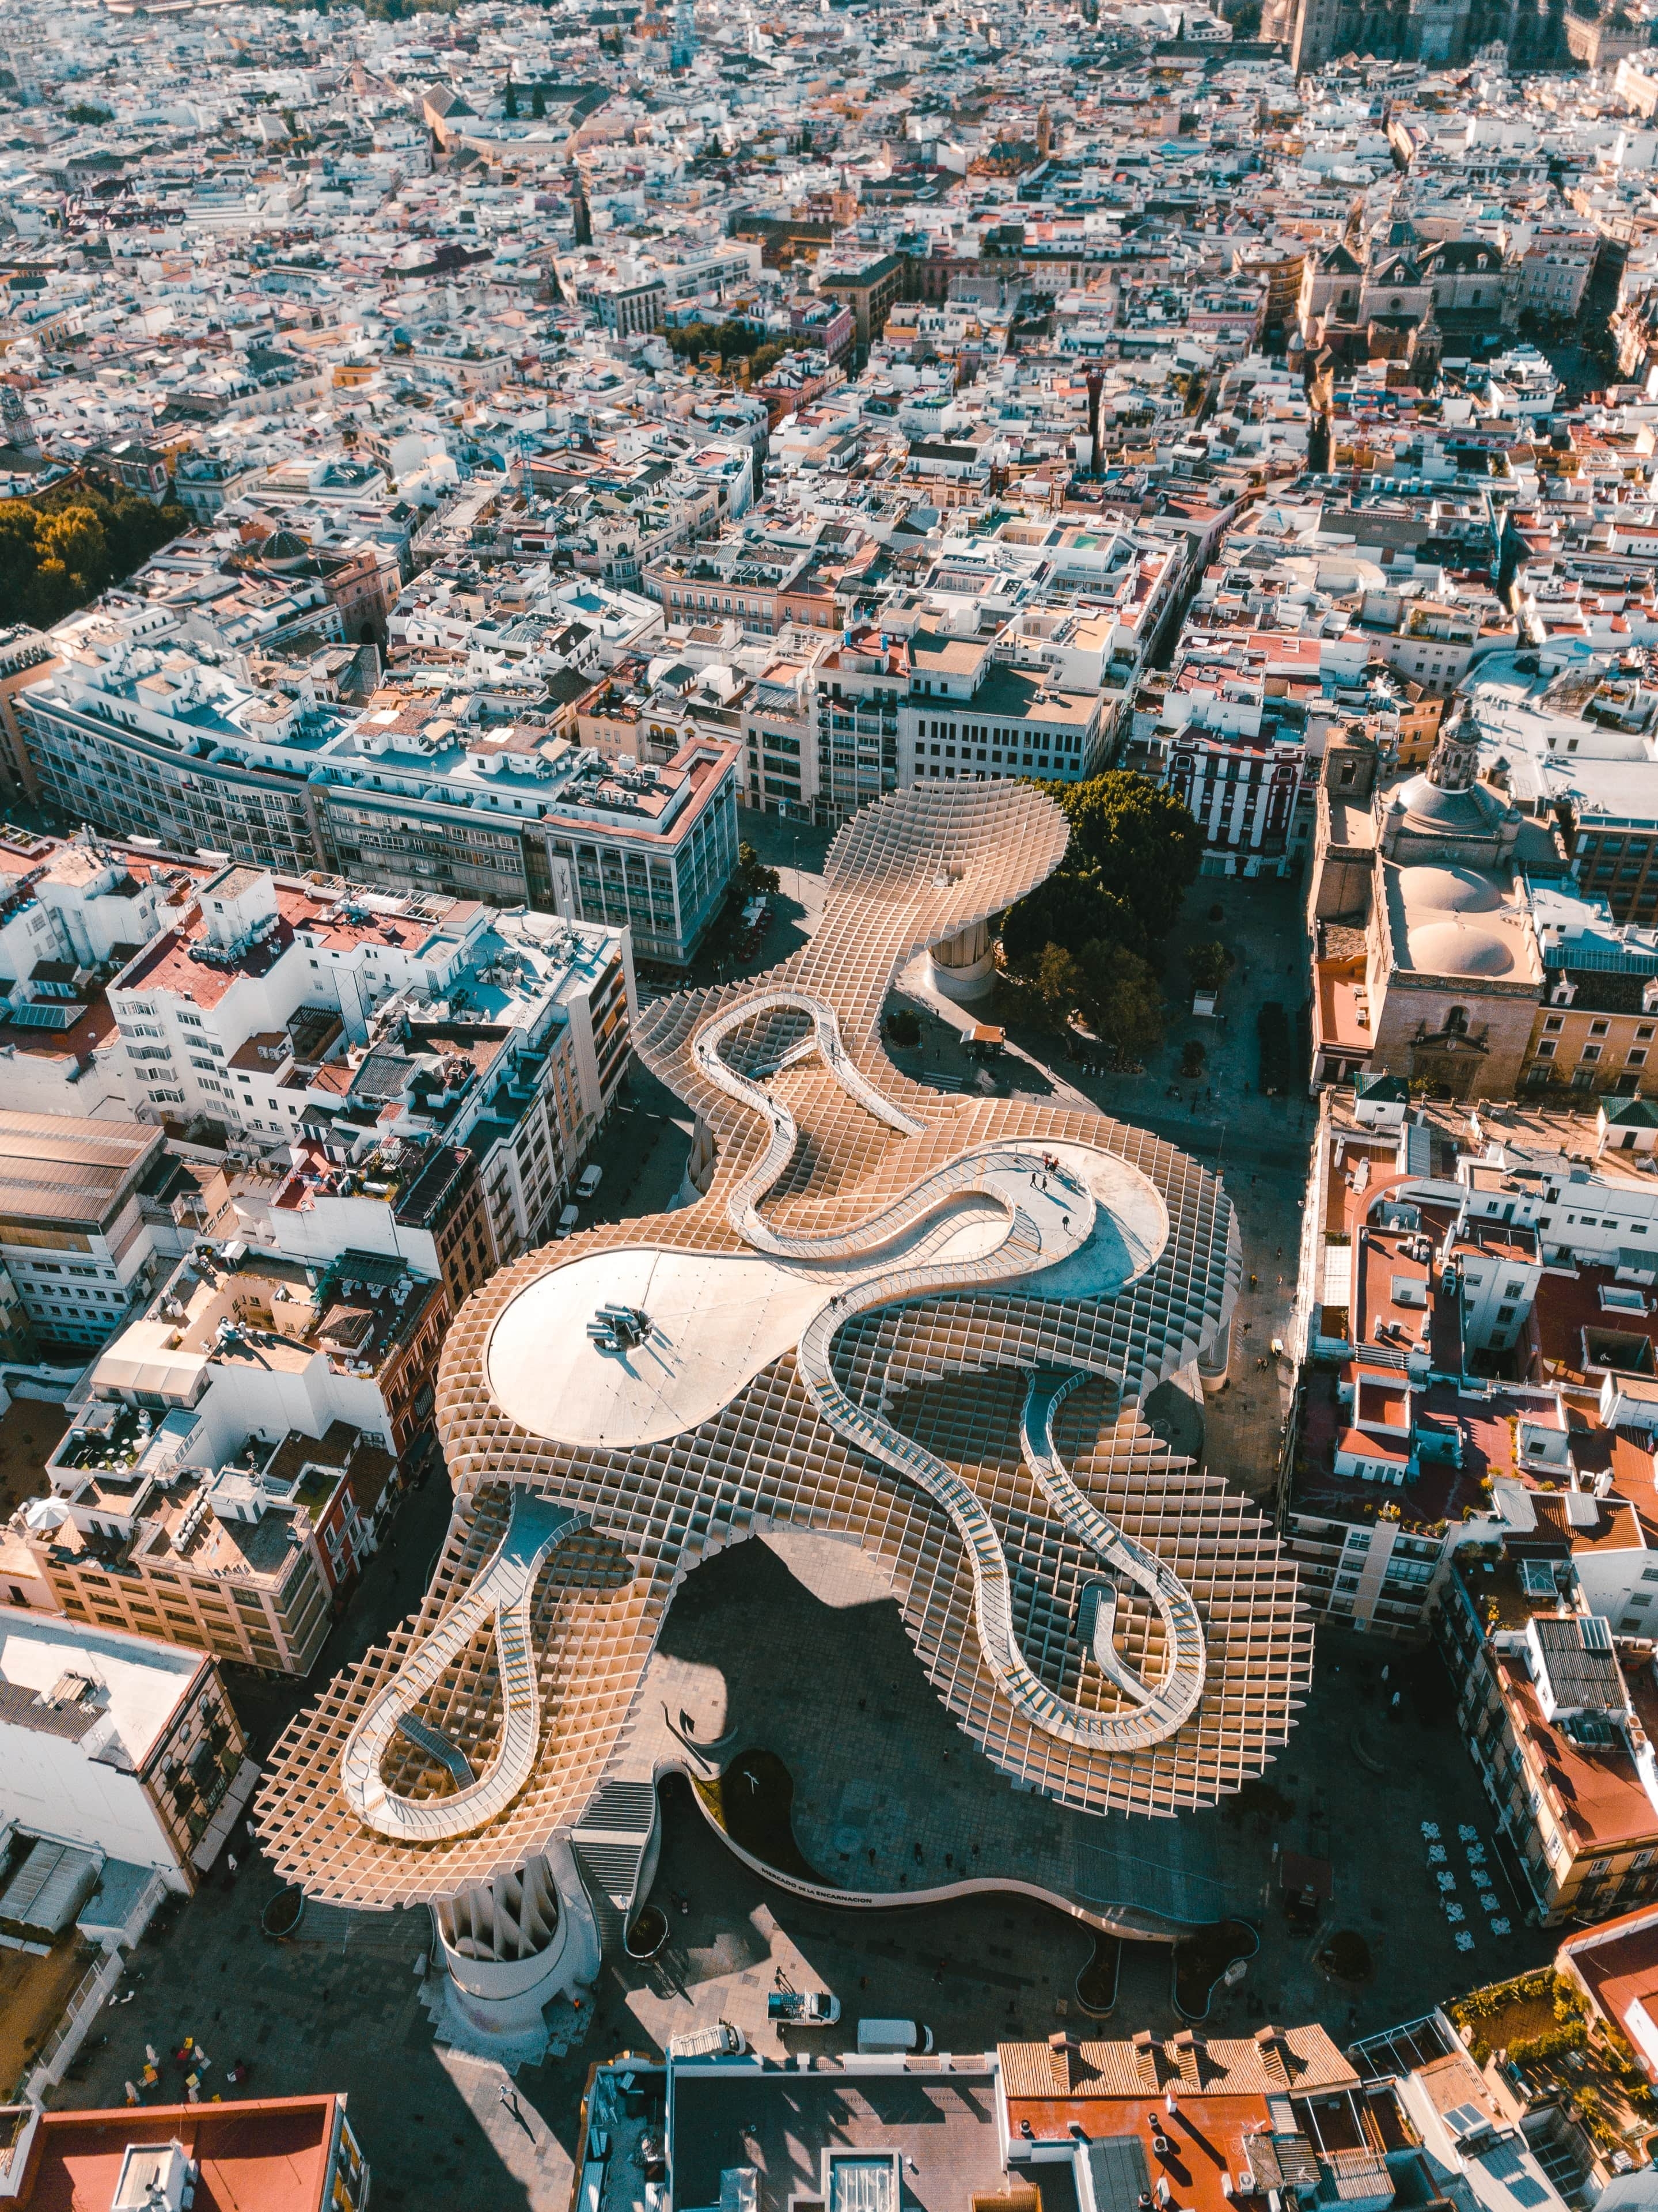 Außergewöhnliche Architektur - Der Metropol Parasol in Sevilla